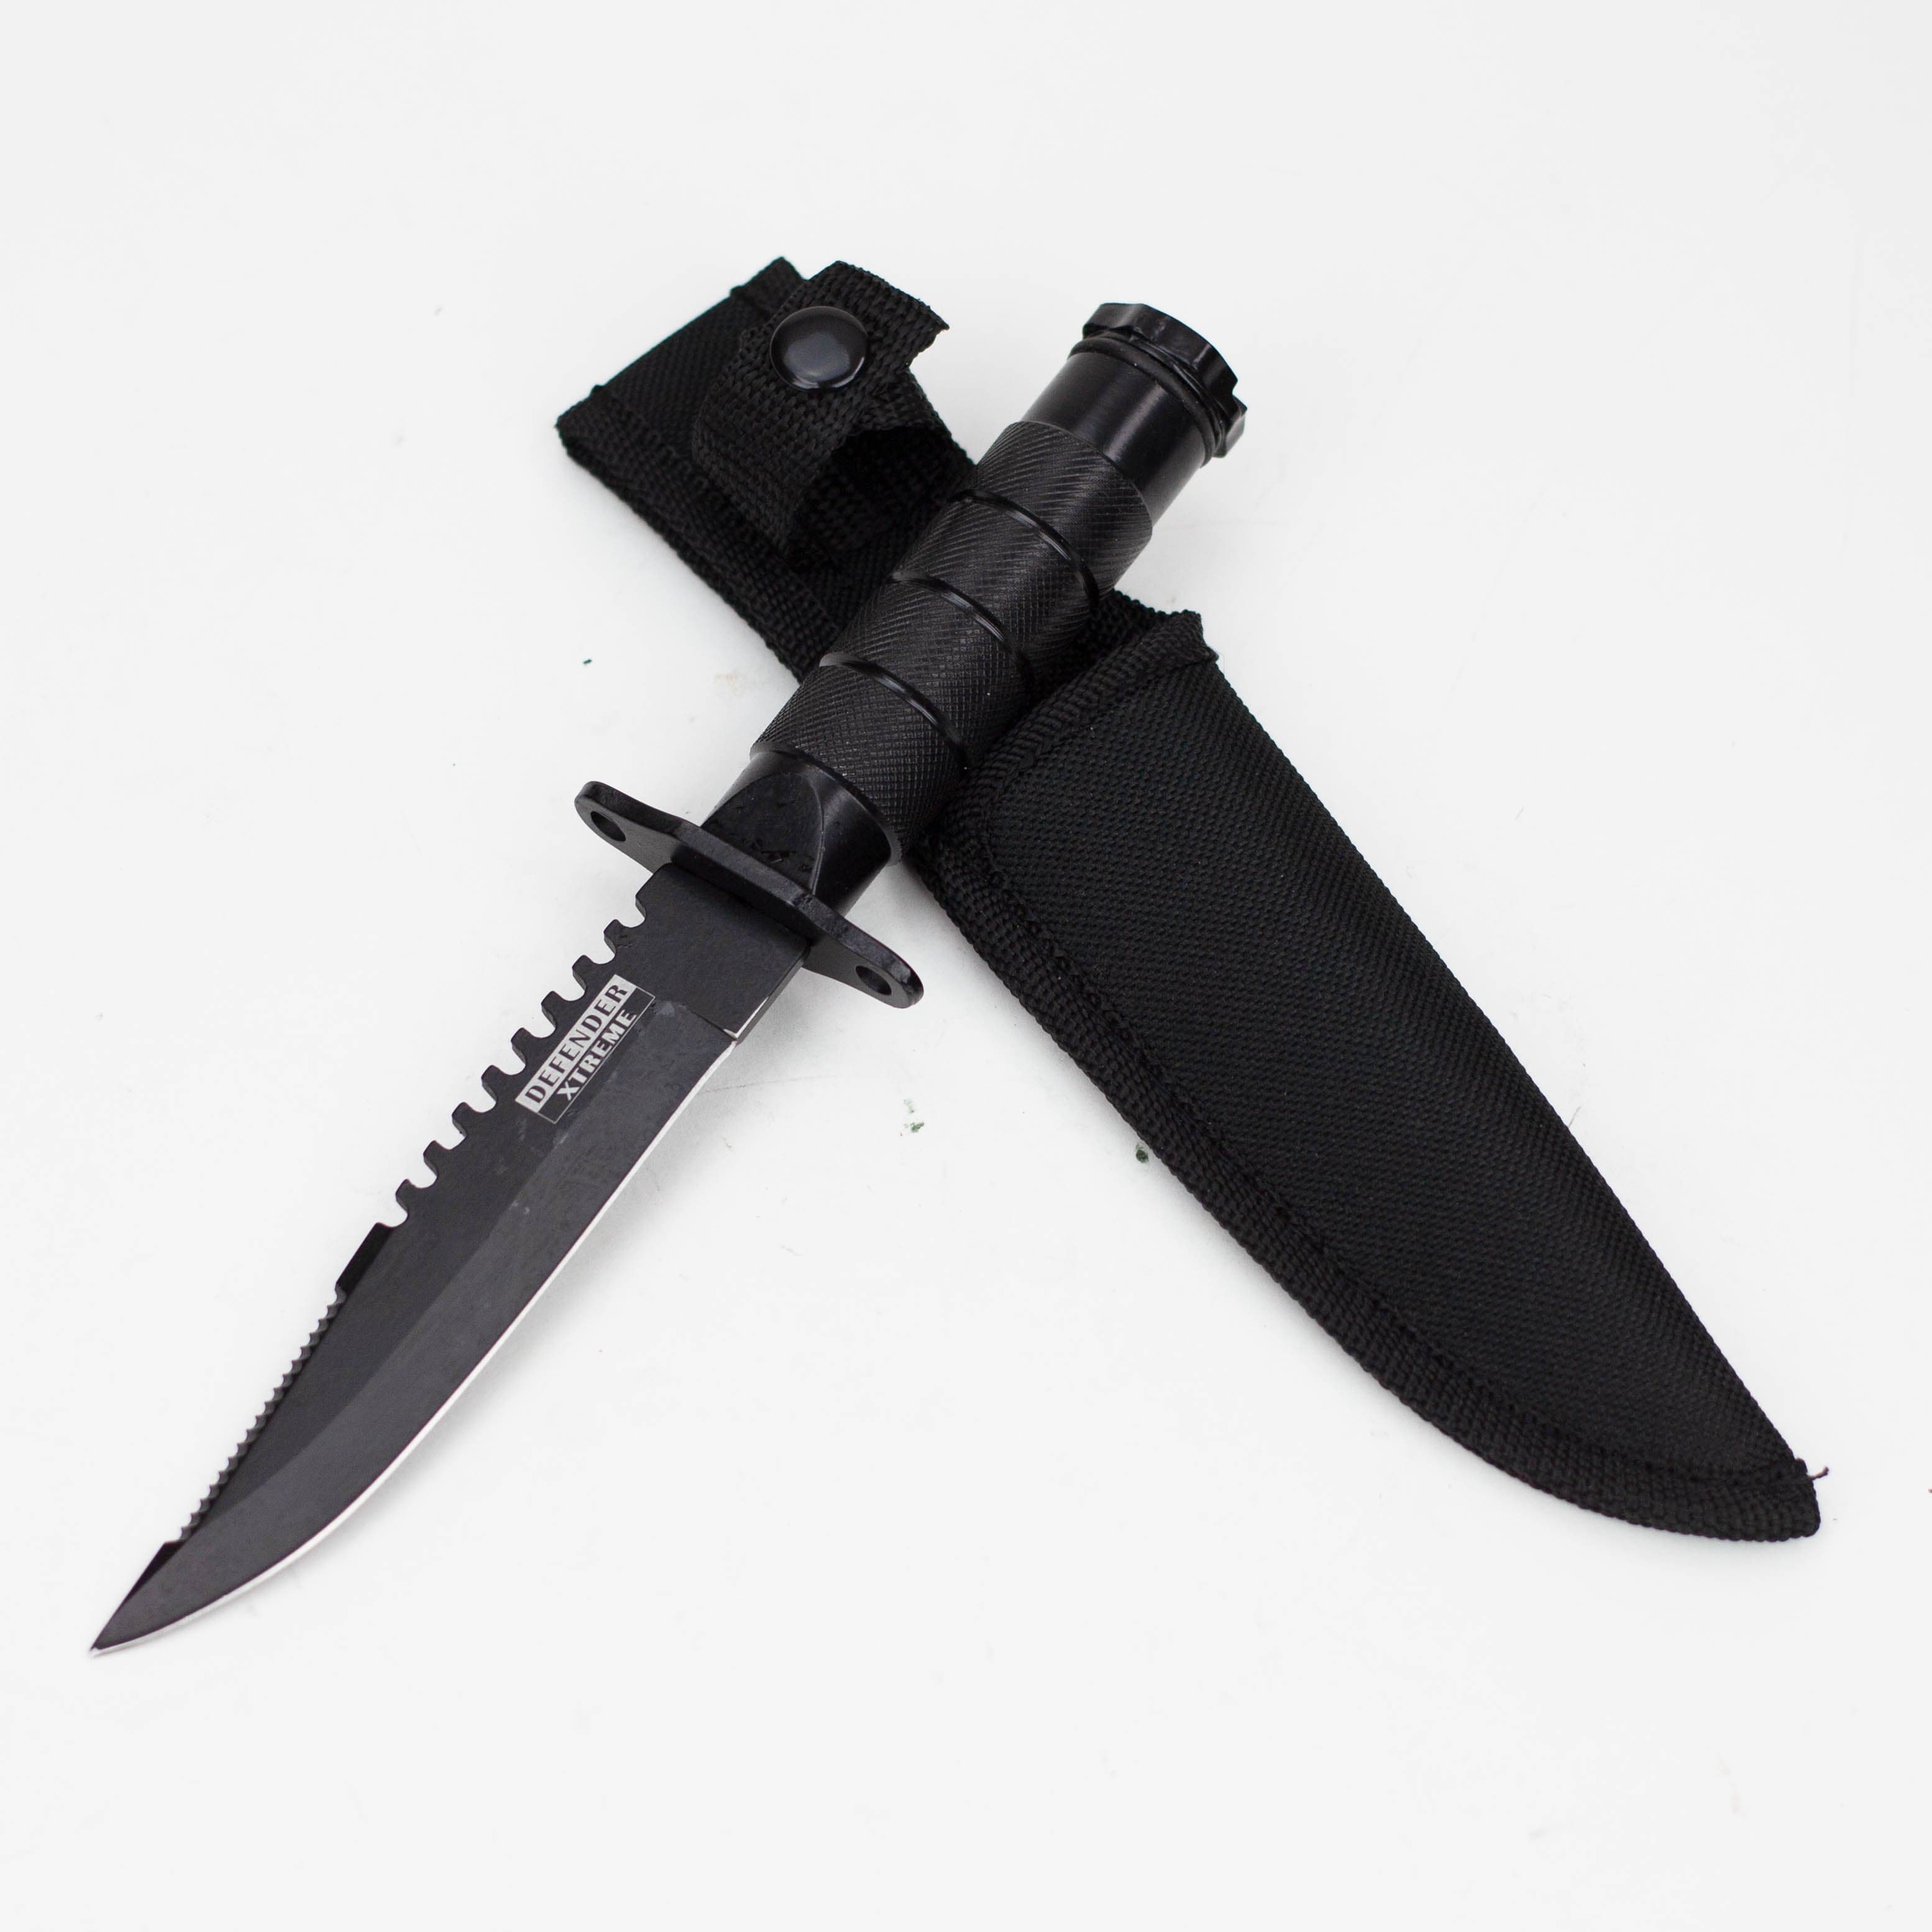 8" Heavy Duty  Mini Survival Knife with Sheath_0